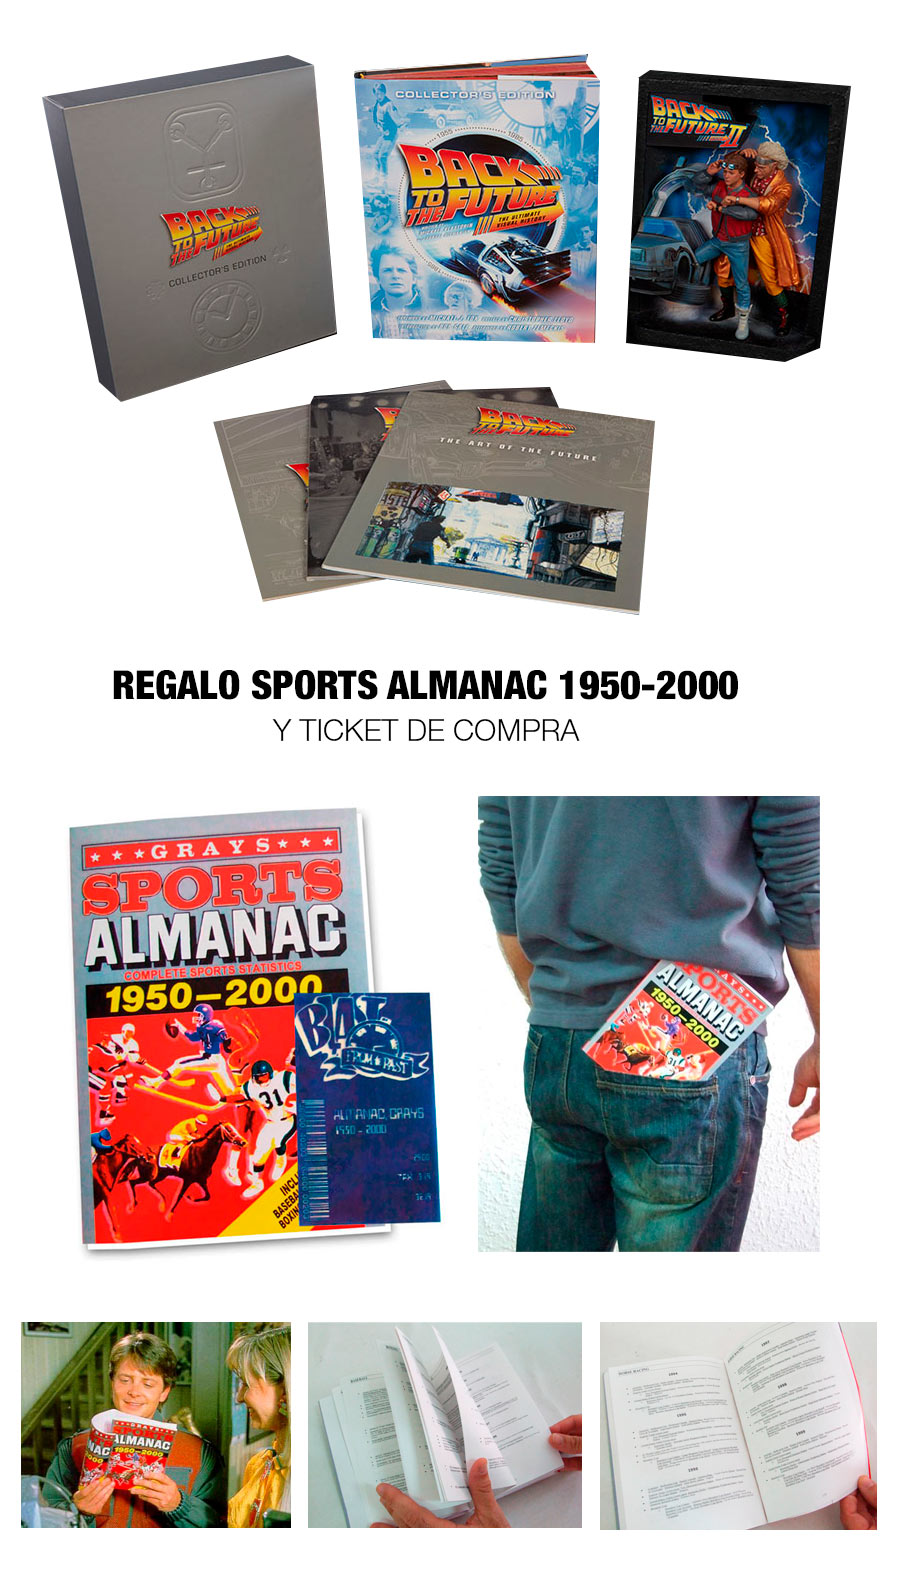 Pack Regreso al Futuro. Libro edición coleccionista Ultimate Visual History + Cuadro 3D & regalo Almanaque Sports Almanac 1950-2000.